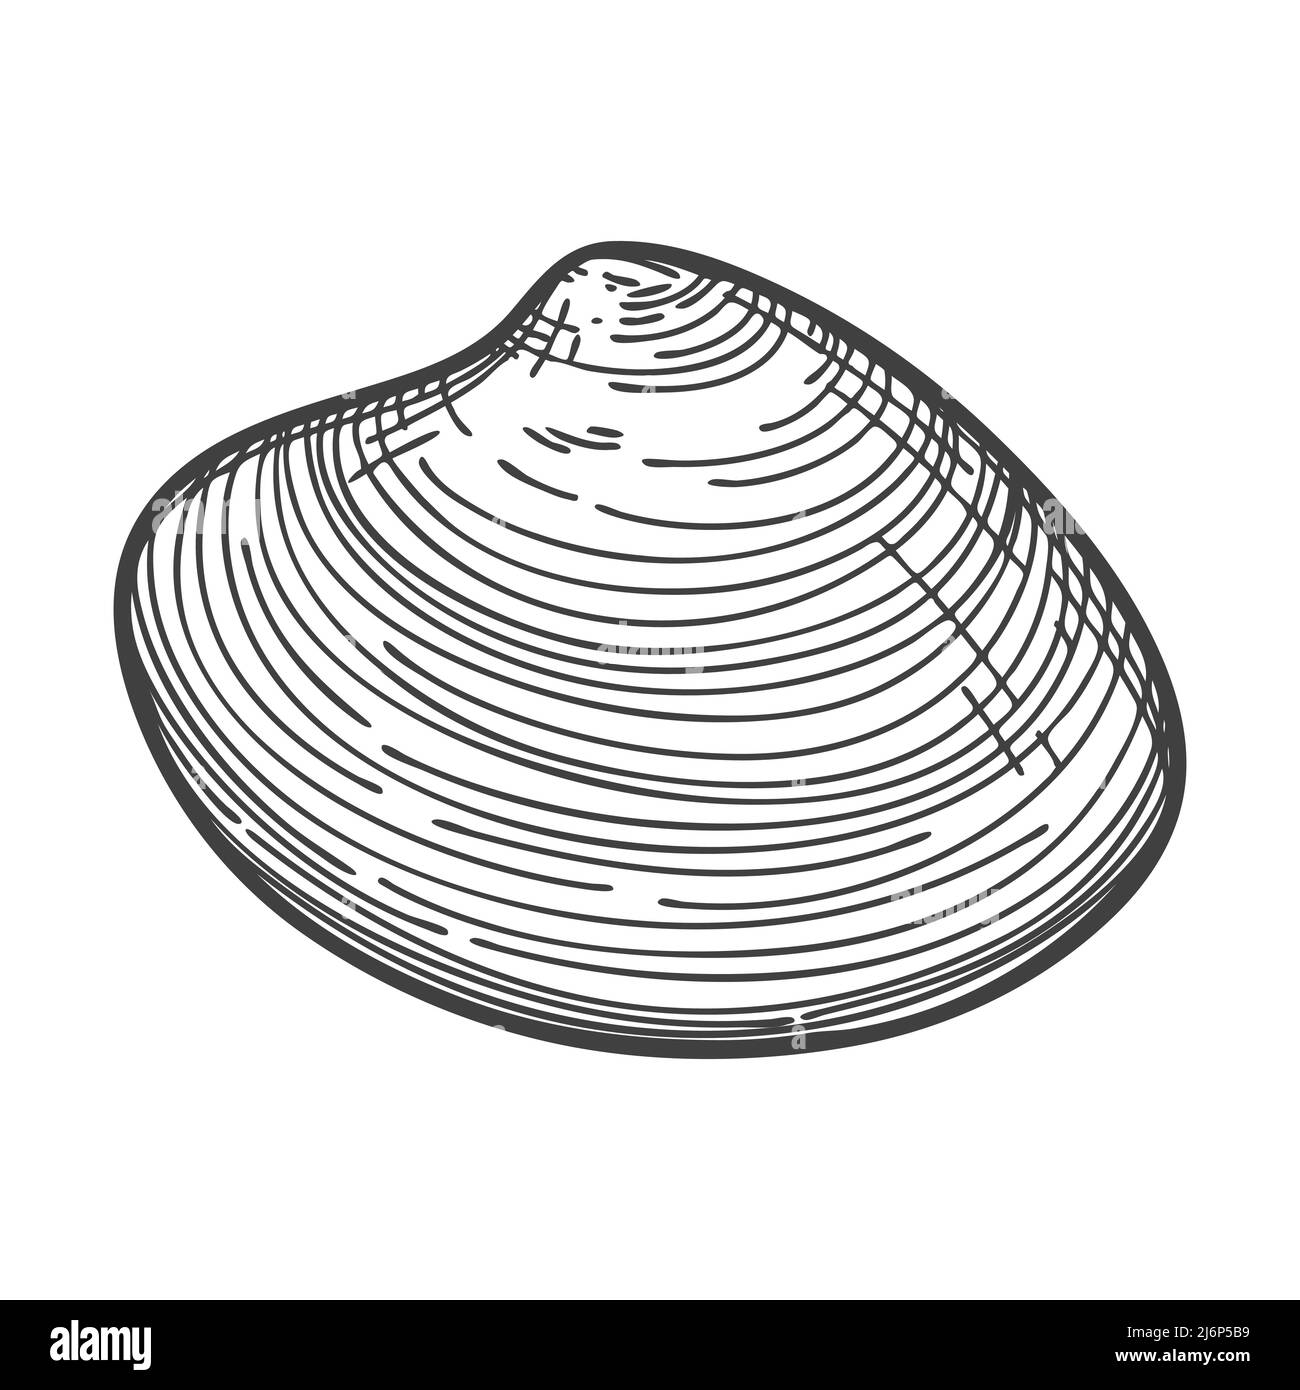 Handgezeichnete Muscheln. Eine leere, geschlossene, flache, ovale, feste Schale einer Weichtiere oder Schnecke. Skizzenstil, gravierte Zeichnung. Schwarz-Weiß-Darstellung iso Stock Vektor